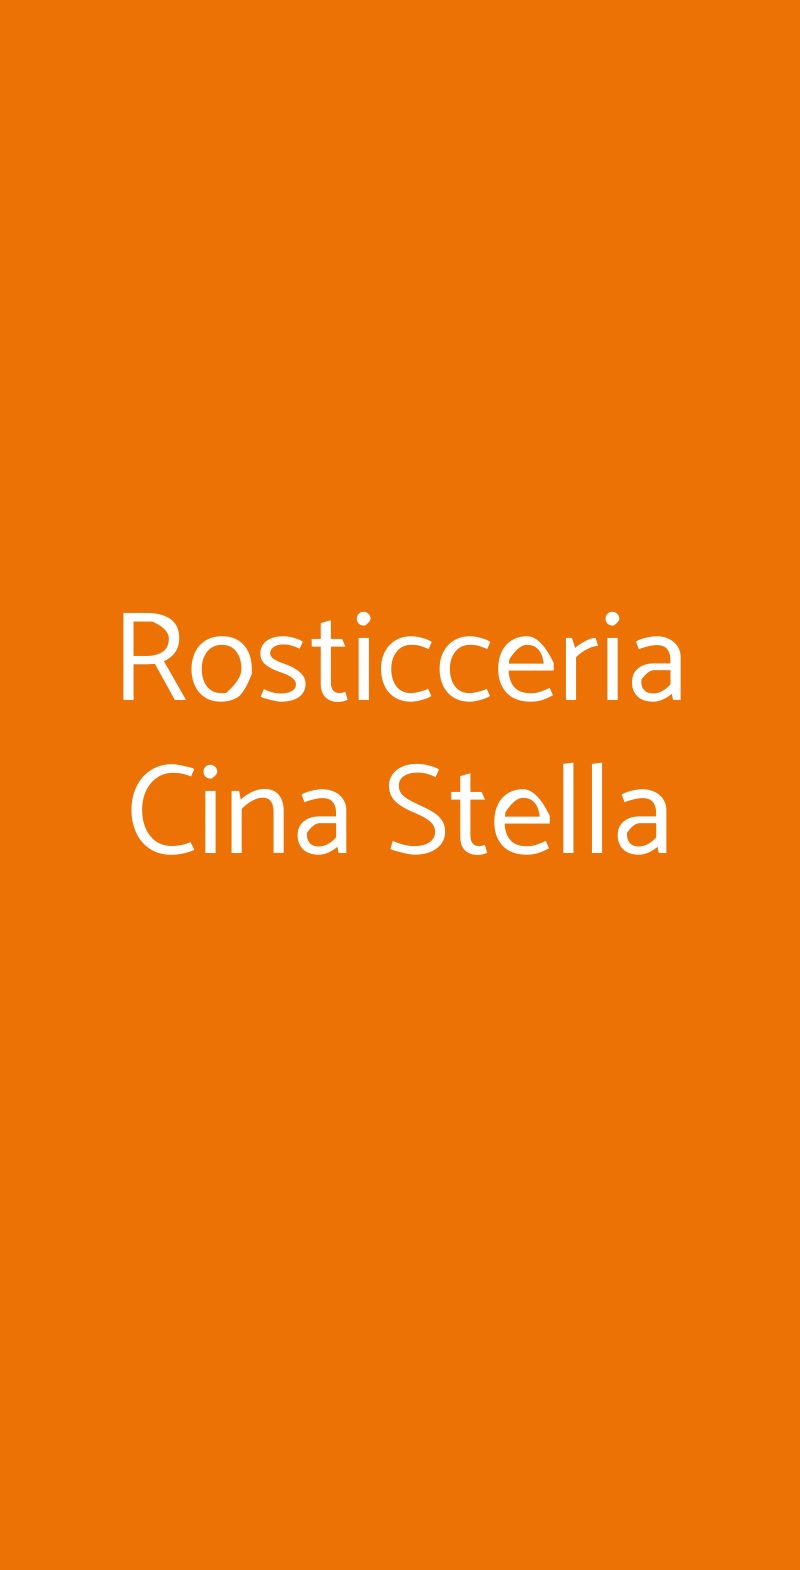 Rosticceria Cina Stella Bologna menù 1 pagina